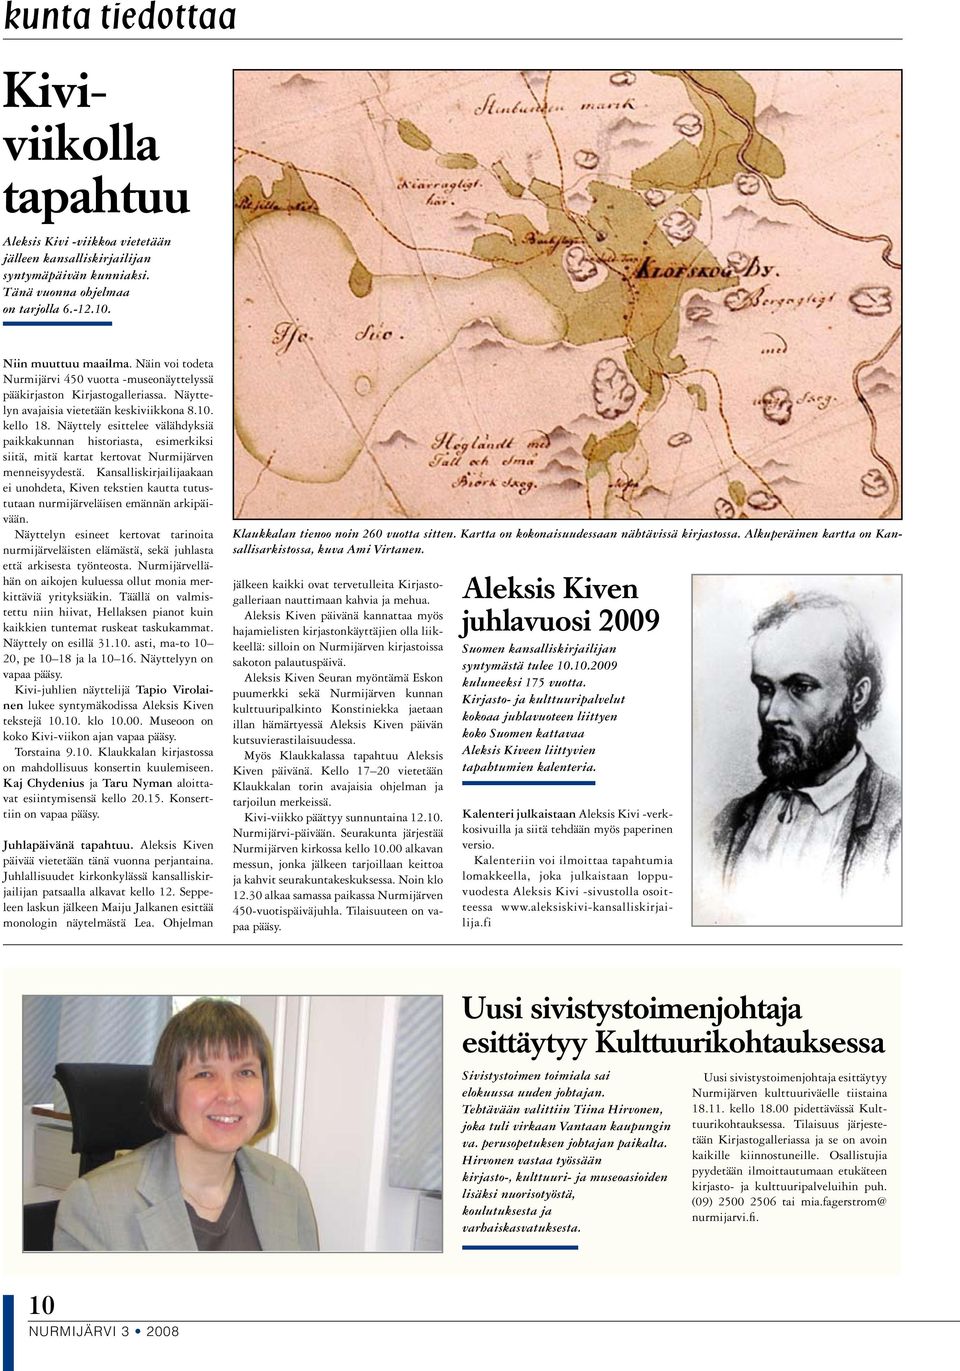 Näyttely esittelee välähdyksiä paikkakunnan historiasta, esimerkiksi siitä, mitä kartat kertovat Nurmijärven menneisyydestä.